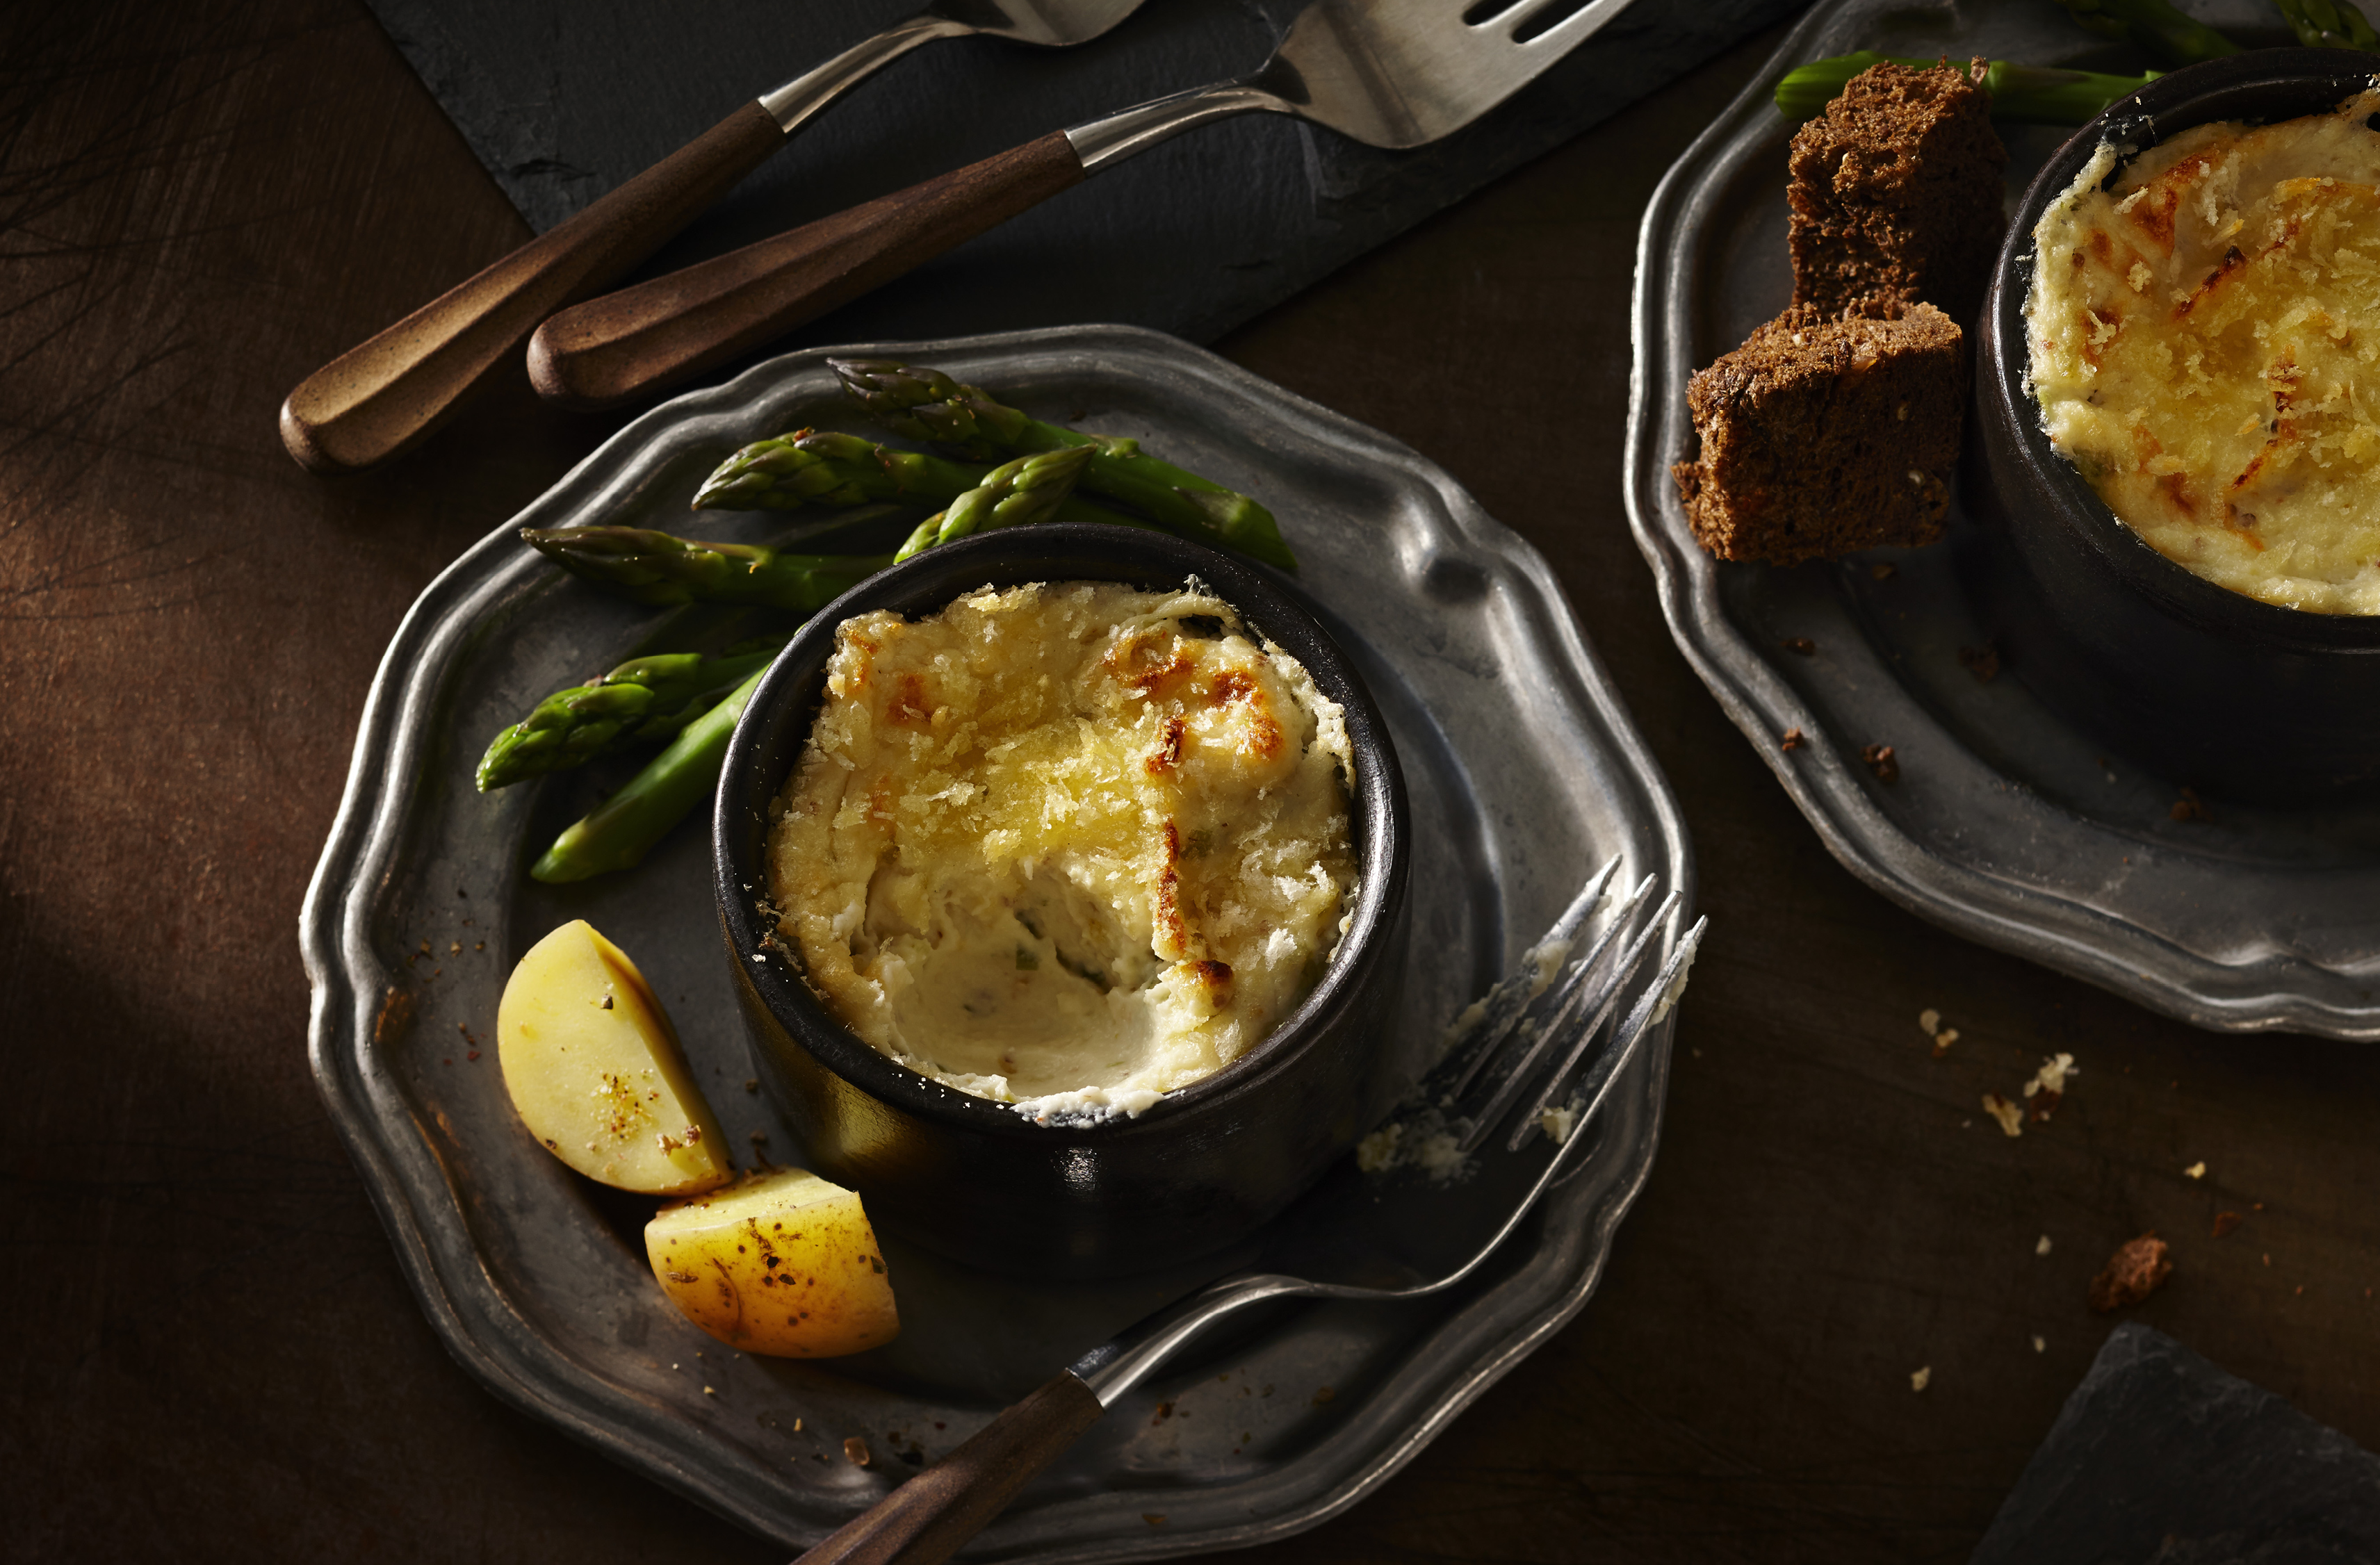 Un bol de fondue au fromage et au chou-fleur sur une assiette avec des asperges et des quartiers de pomme de terre
